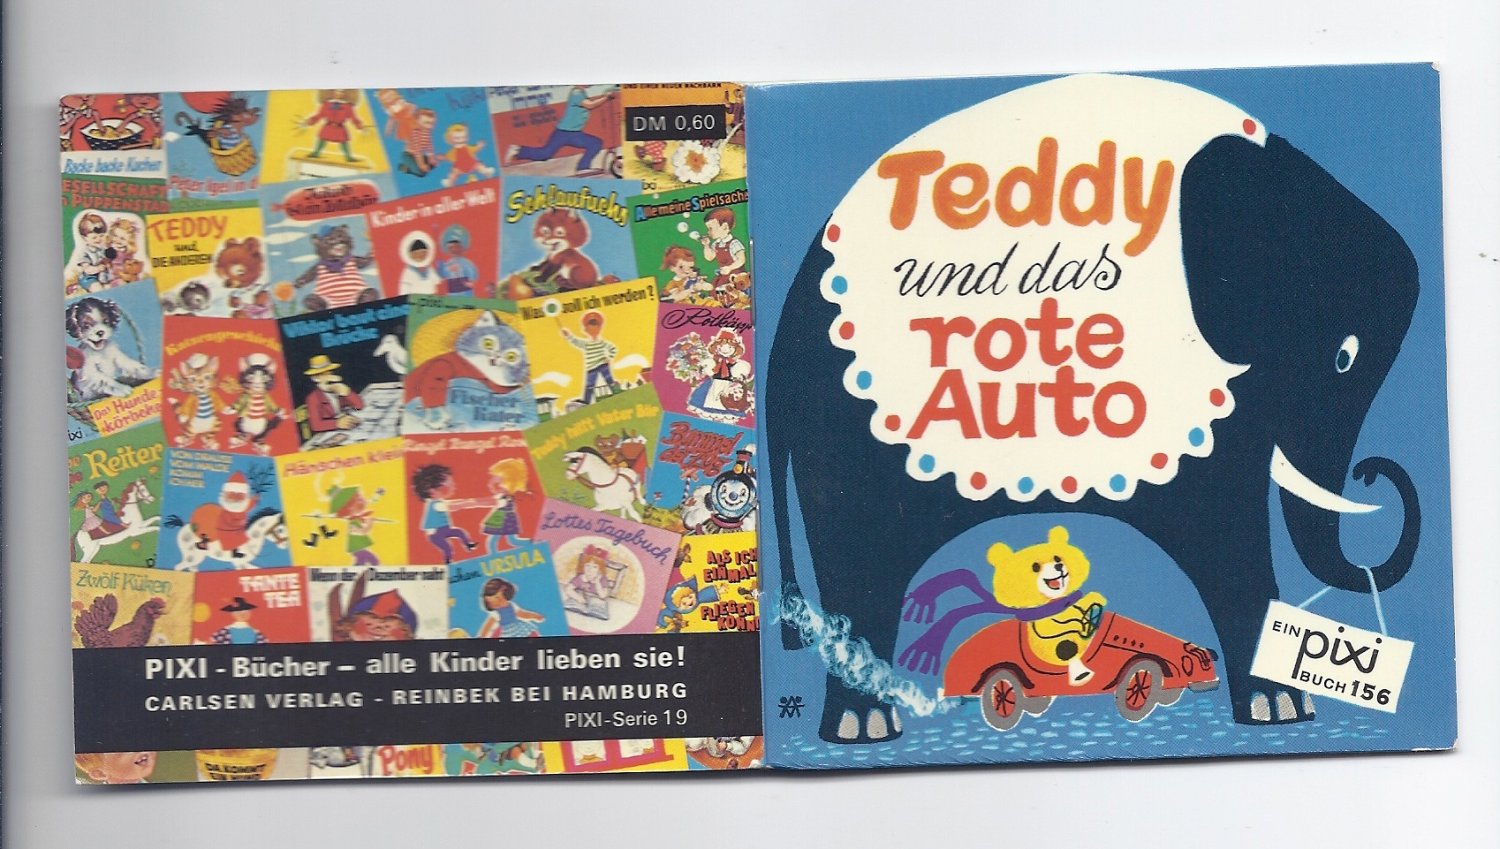 Teddy und das rote Auto Ein pixi Buch 156 PIXI-Serie 19“ (Grete